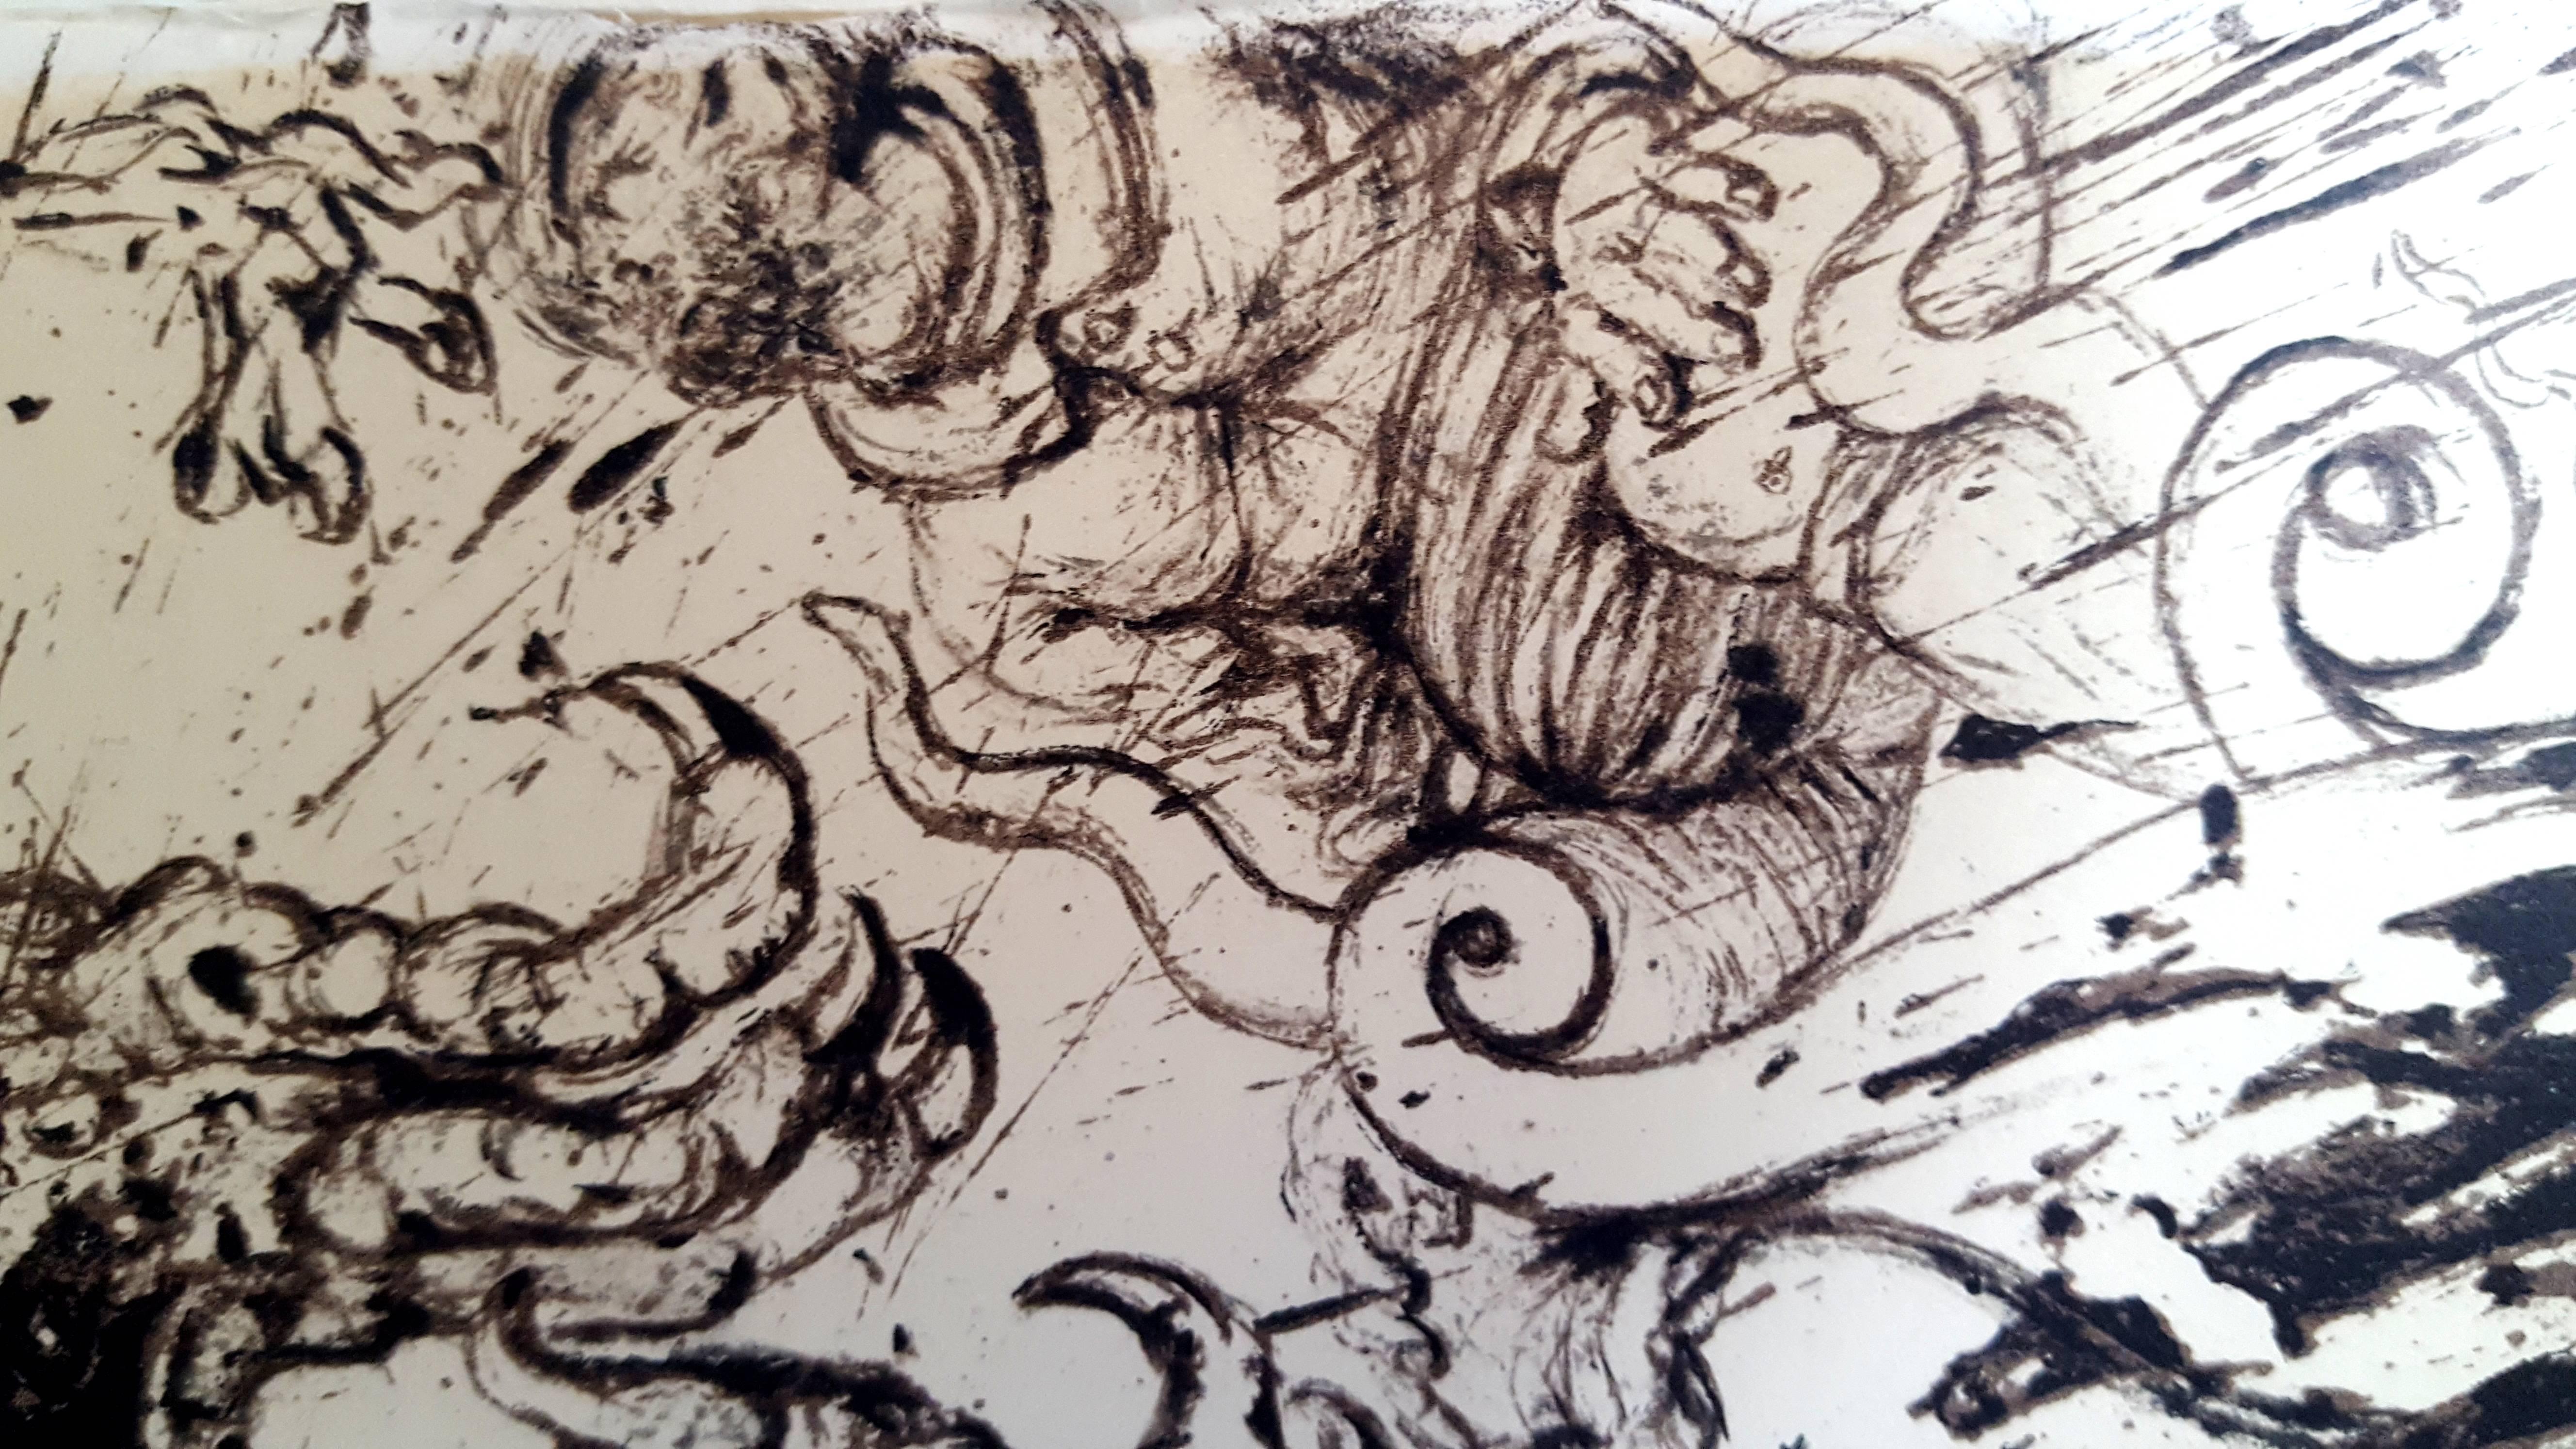 Salvador Dali - Don Quichotte - Original Lithograph
Joseph FORET, Paris, 1957
PRINTER : Atelier Mourlot. 
- SIGNATURE : plate signed by Dali. 
- LIMITED : 197 copies. 
- PAPER : BFK Rives vellum. 
- SIZE : 17 x 14". 
- REFERENCES : Field 57-1 /